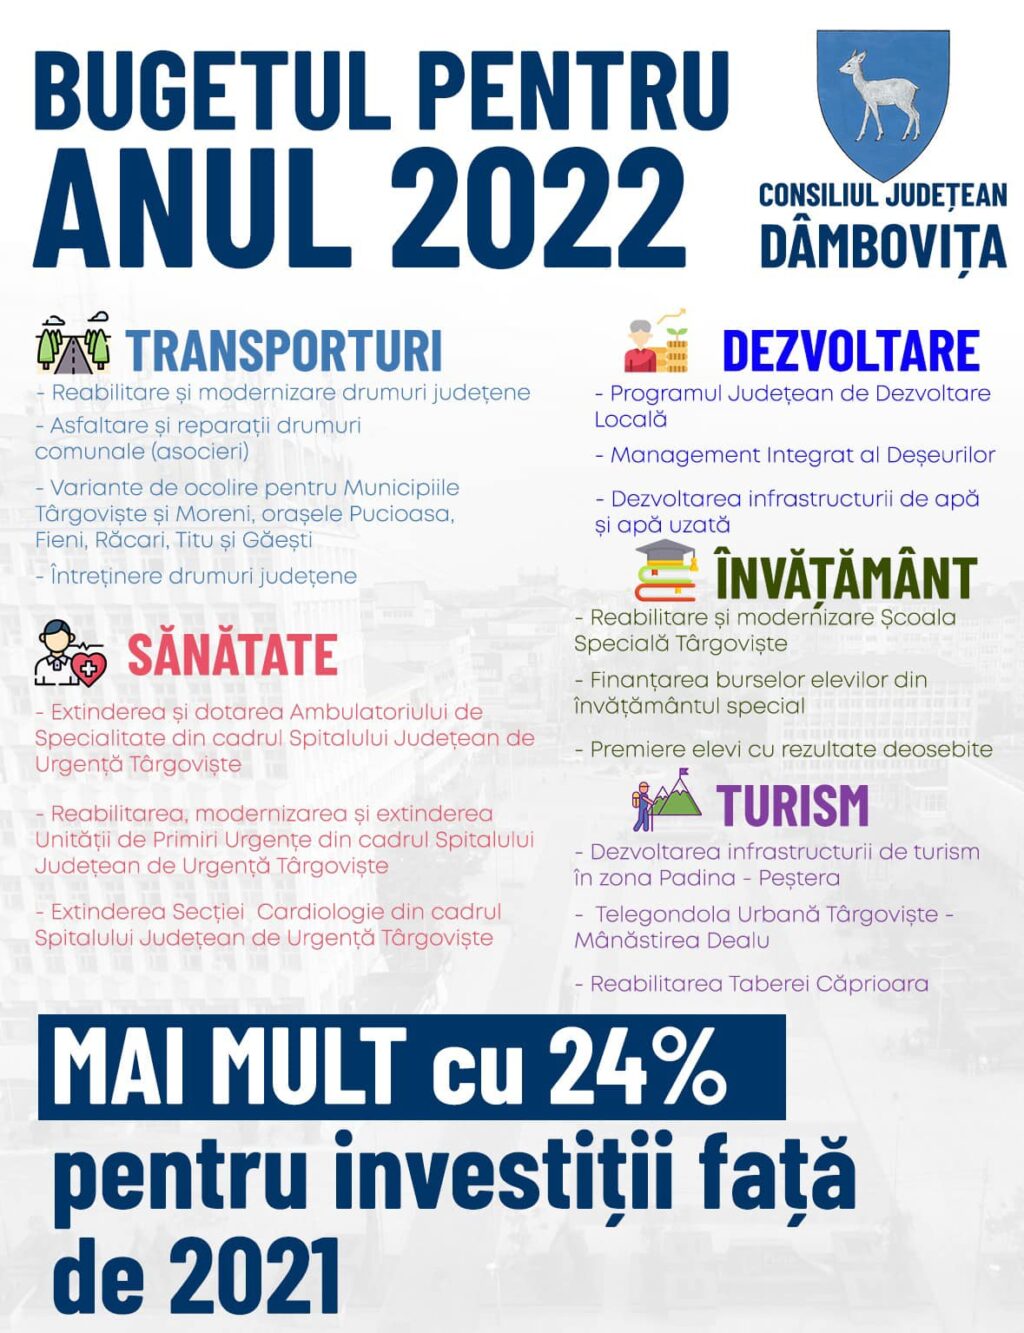 A fost aprobat bugetul propriu al județului Dâmbovița pe anul 2022